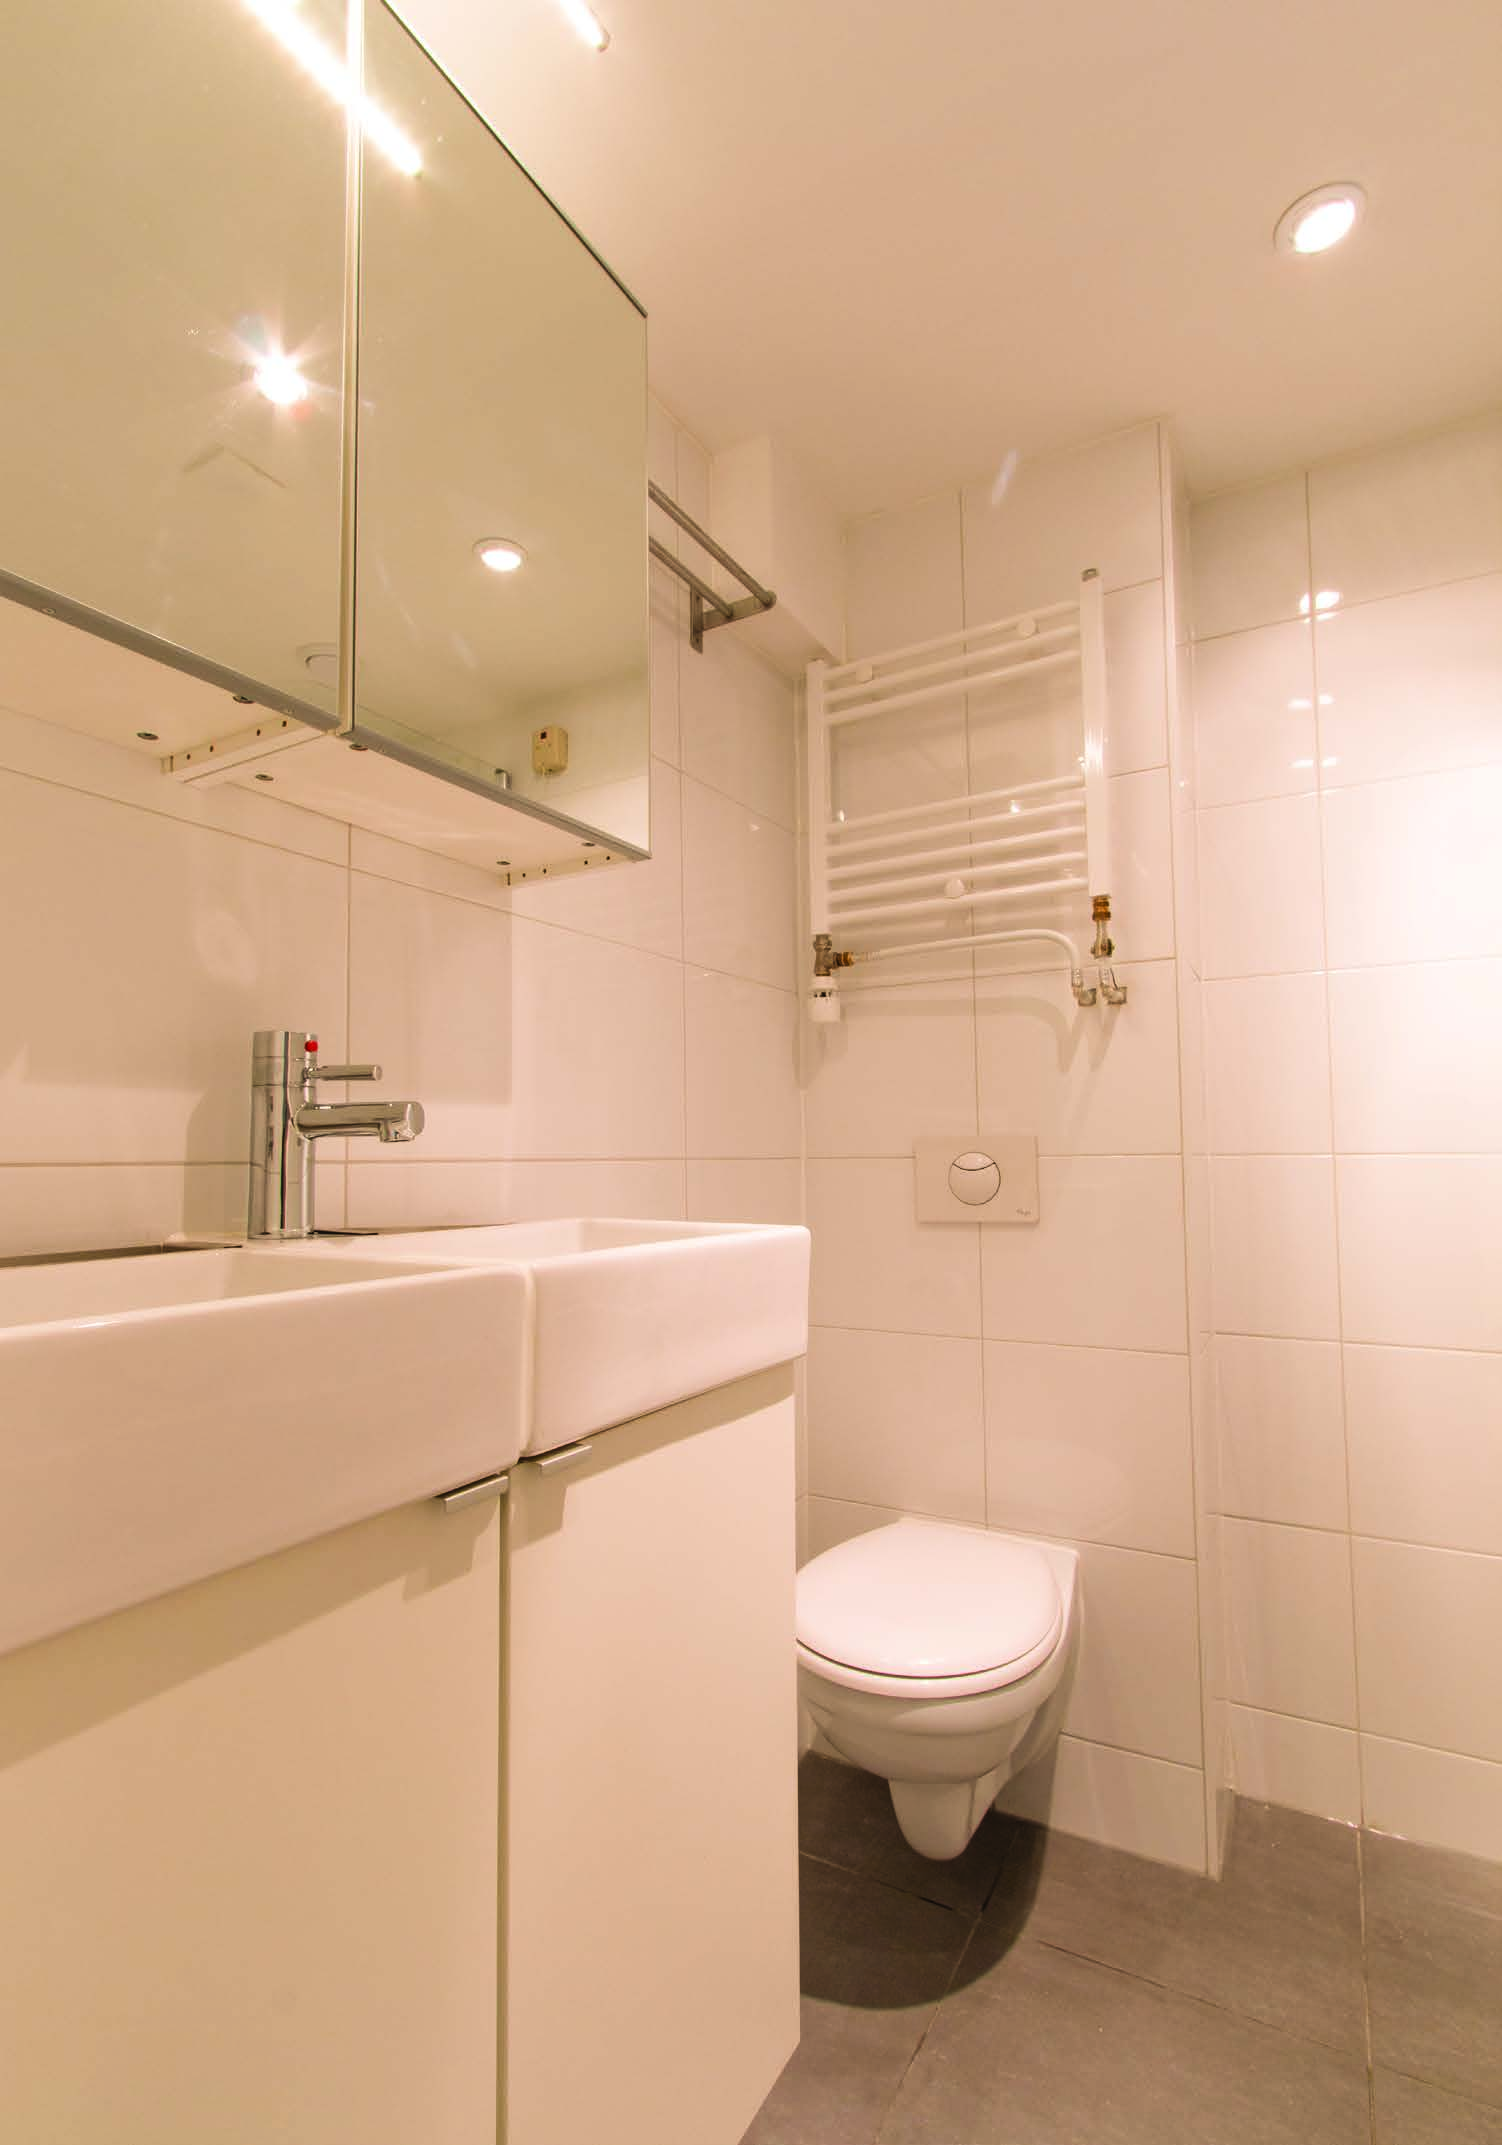 BAD KAMER licht & fris Aangrenzend aan het slaapgedeelte bevindt zich de goed ingedeelde badkamer met toilet, bad met douchegedeelte, dubbele wastafel en wasmachine.